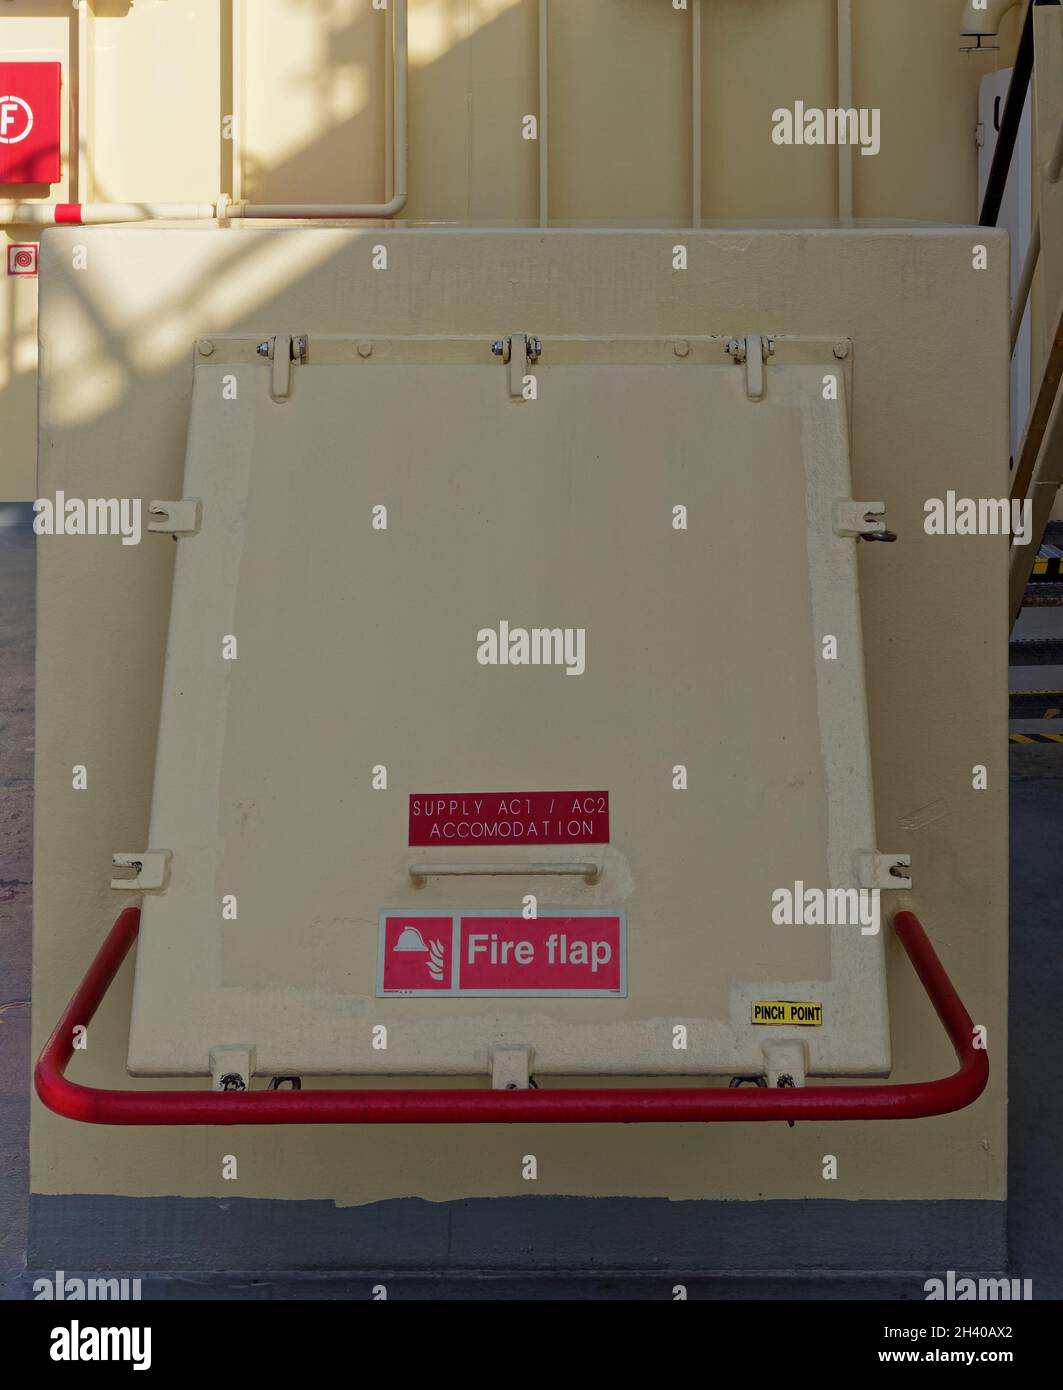 L'aletta antincendio aperta che fornisce aria all'alloggiamento di un'imbarcazione sismica con segnali di avvertimento che indicano che questa deve essere chiusa in caso di incendio onb Foto Stock